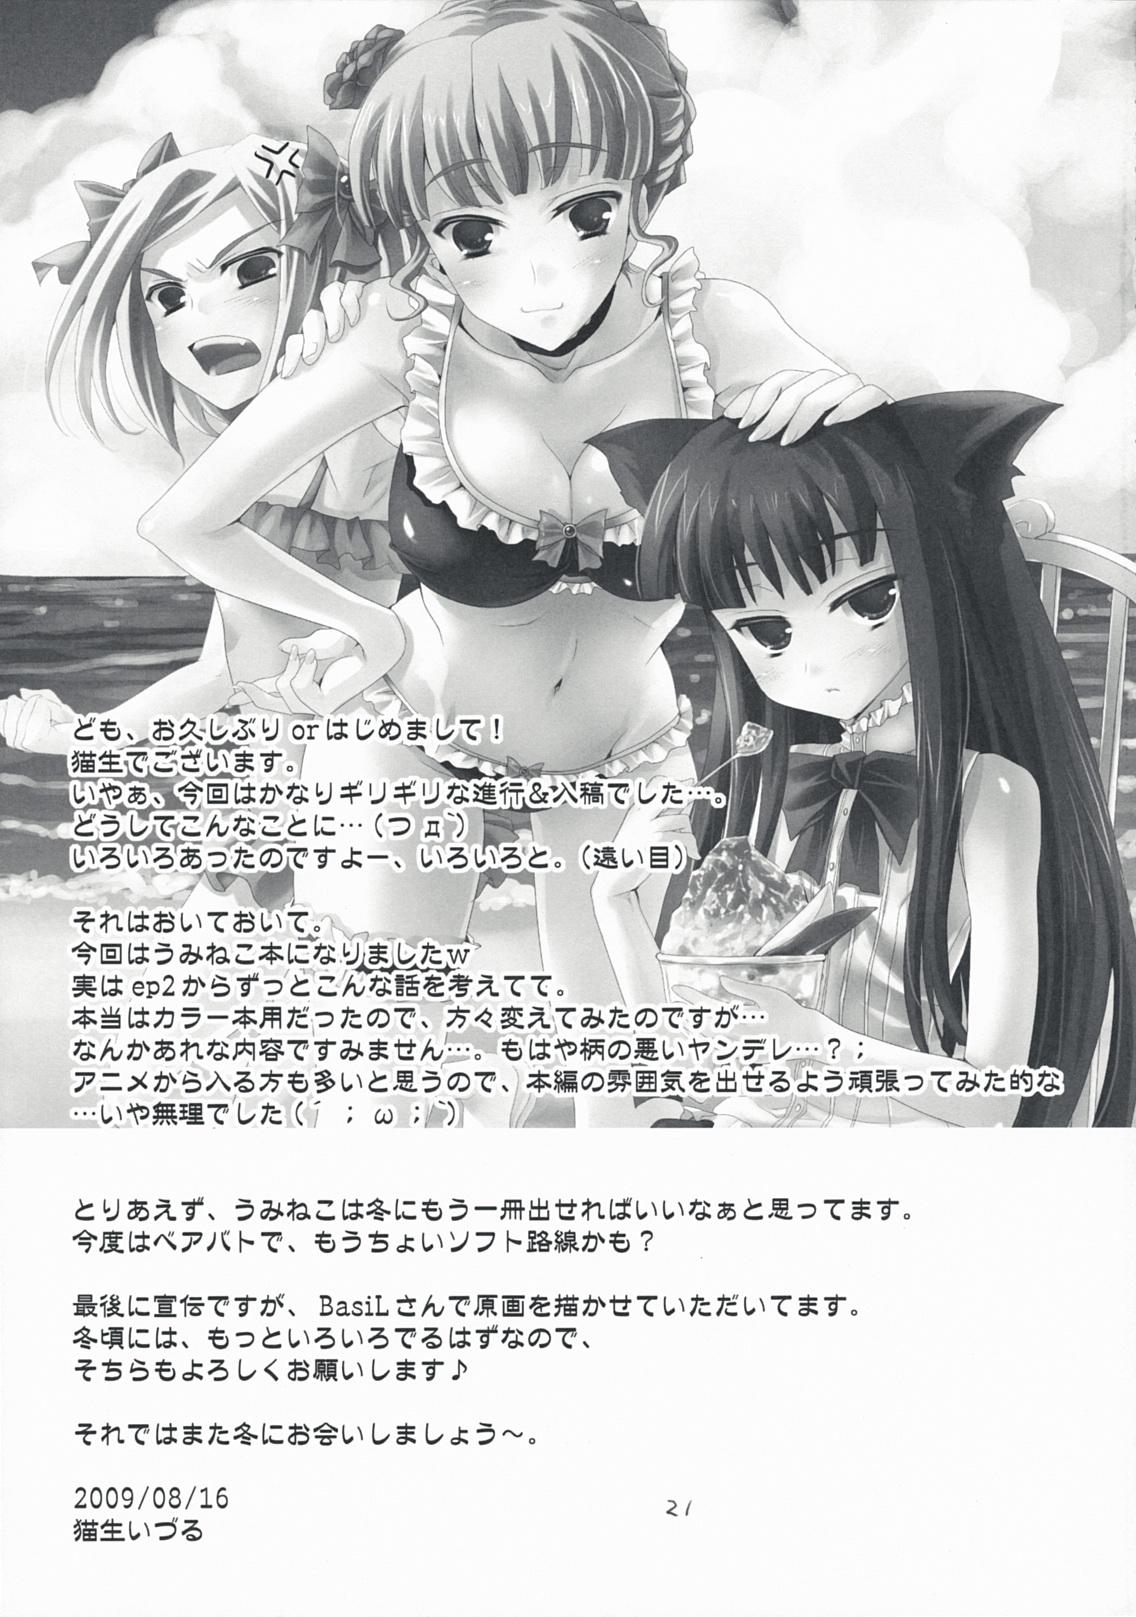 Deutsche The Queen Of Nightmare - Umineko no naku koro ni Chaturbate - Page 21